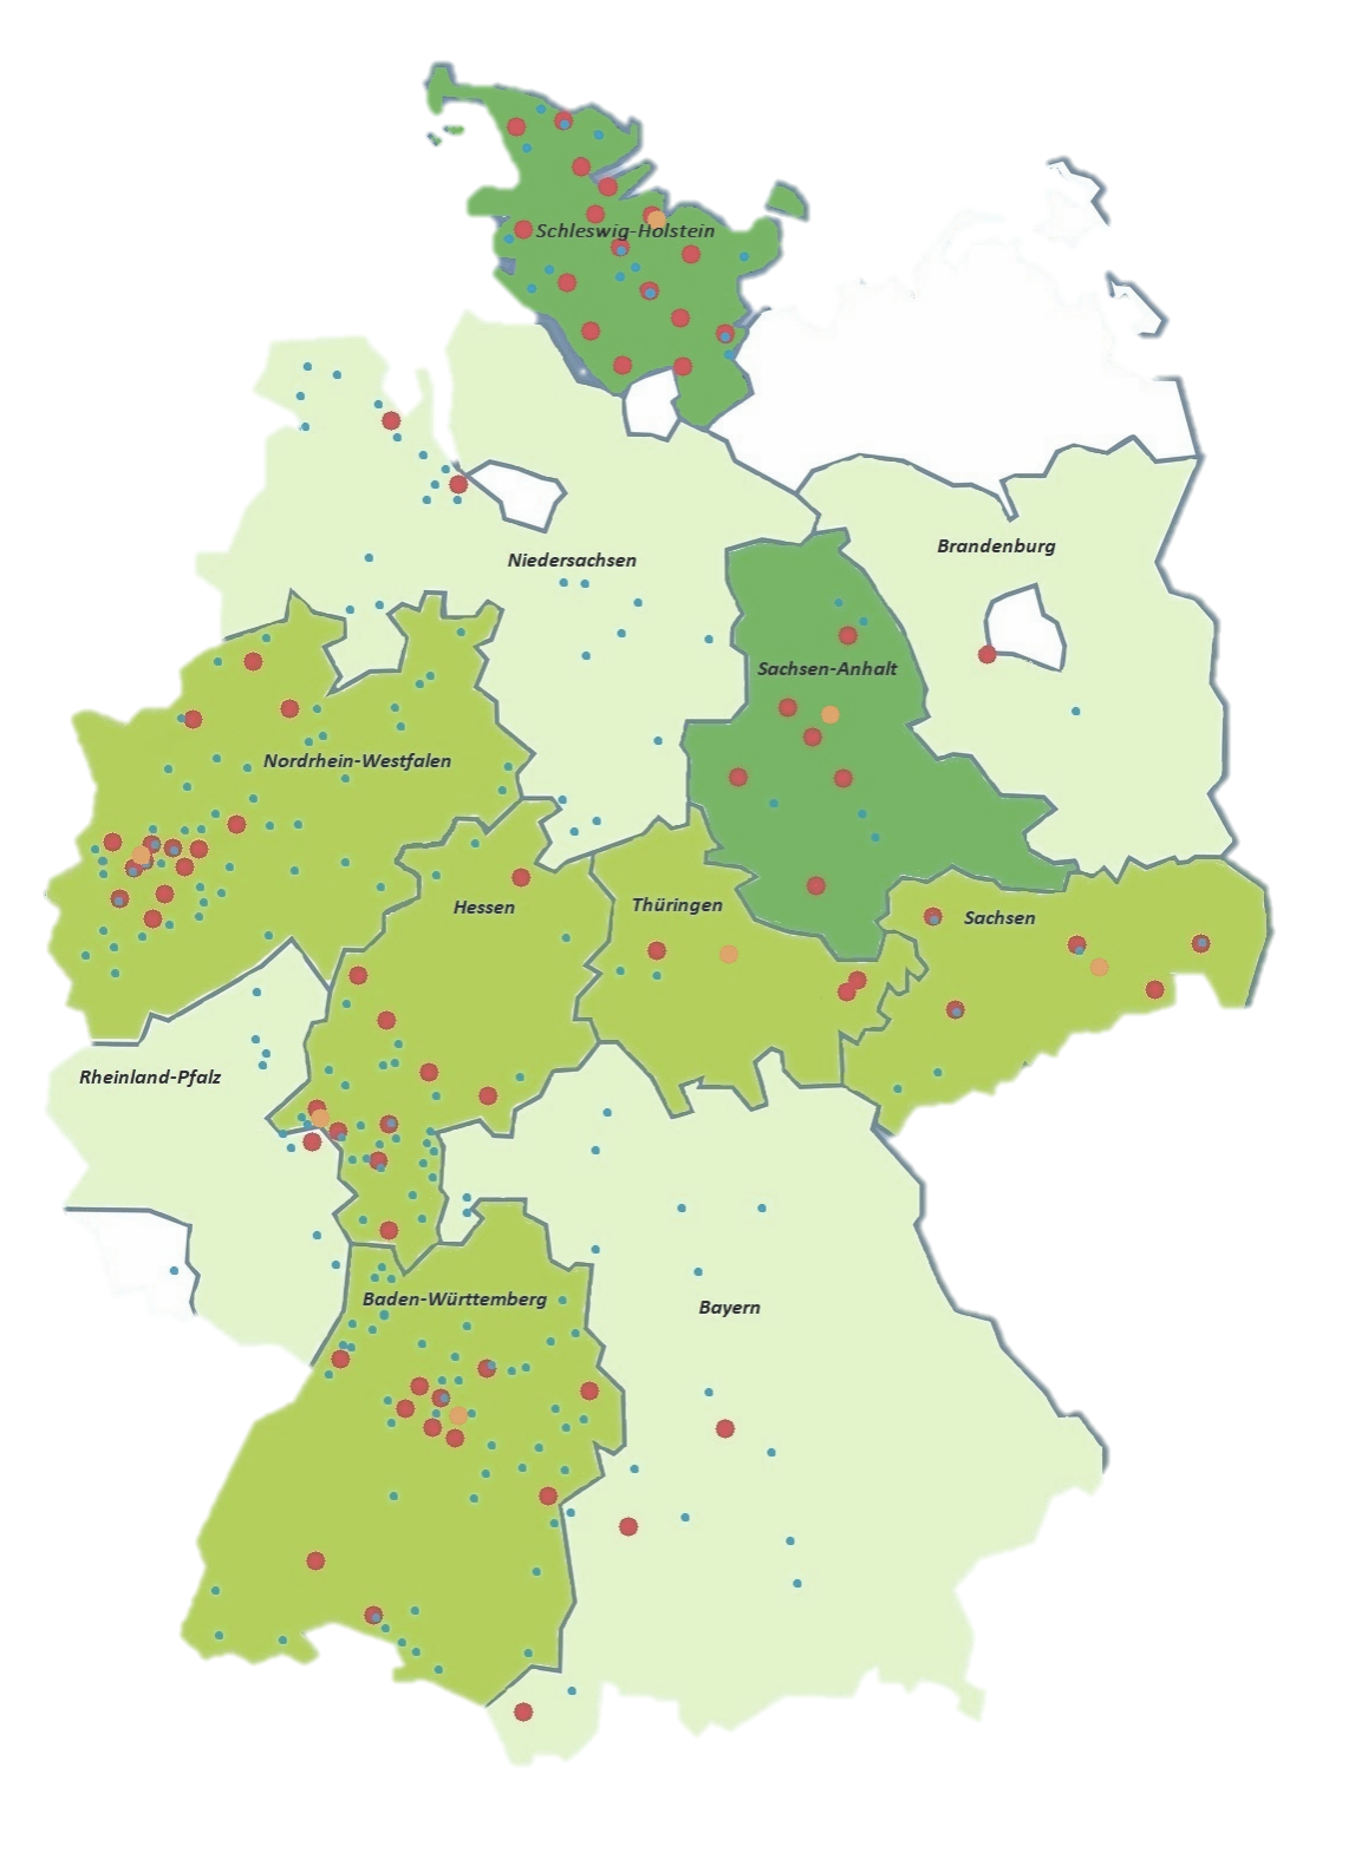 Karte zu Projekten in Deutschland mit Ausländerbehörden